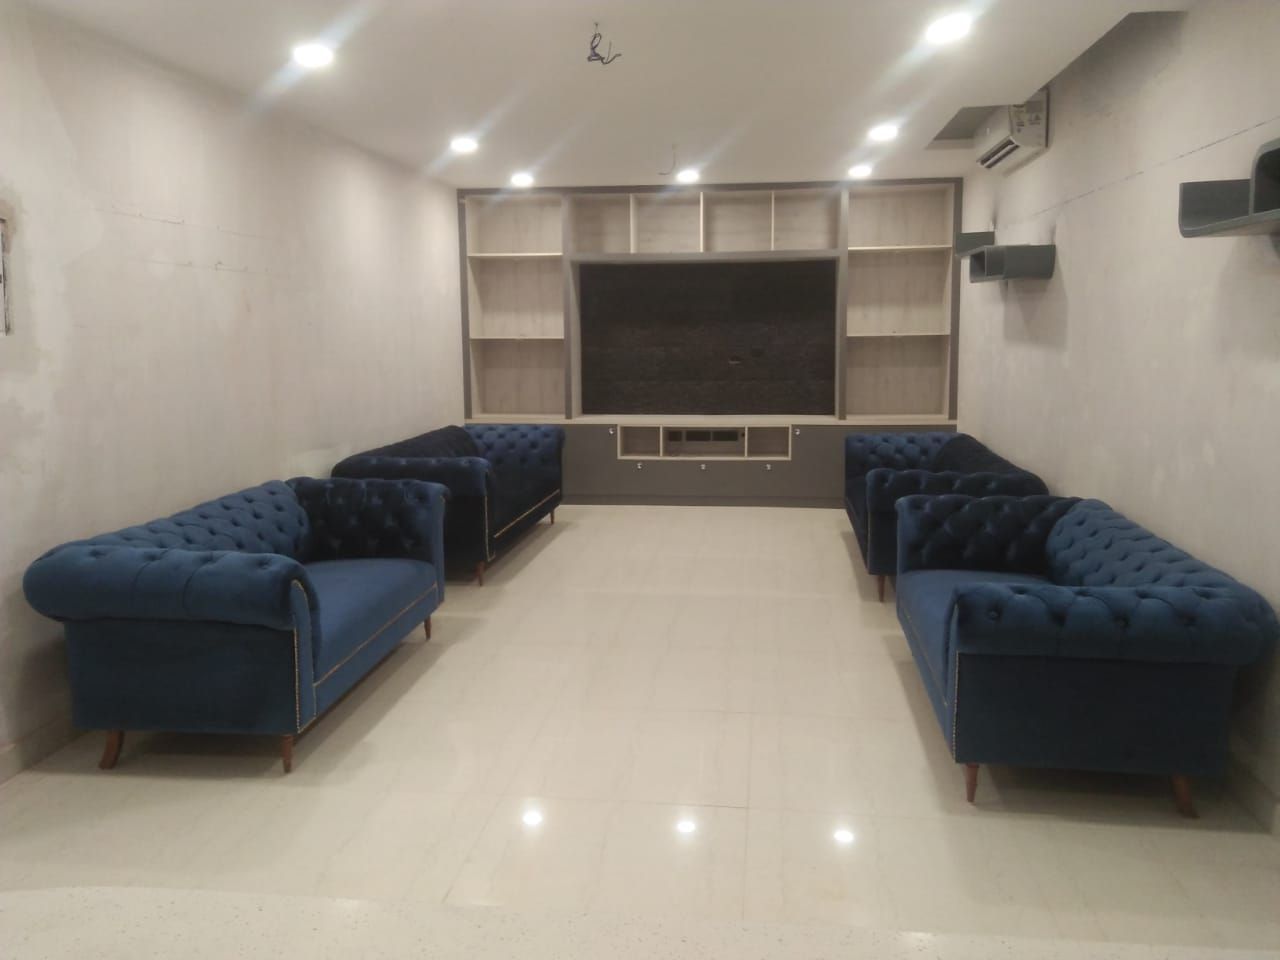 Basement at Noida, Grey-Woods Grey-Woods Salas de estilo minimalista Piedra Muebles para televisión y equipos